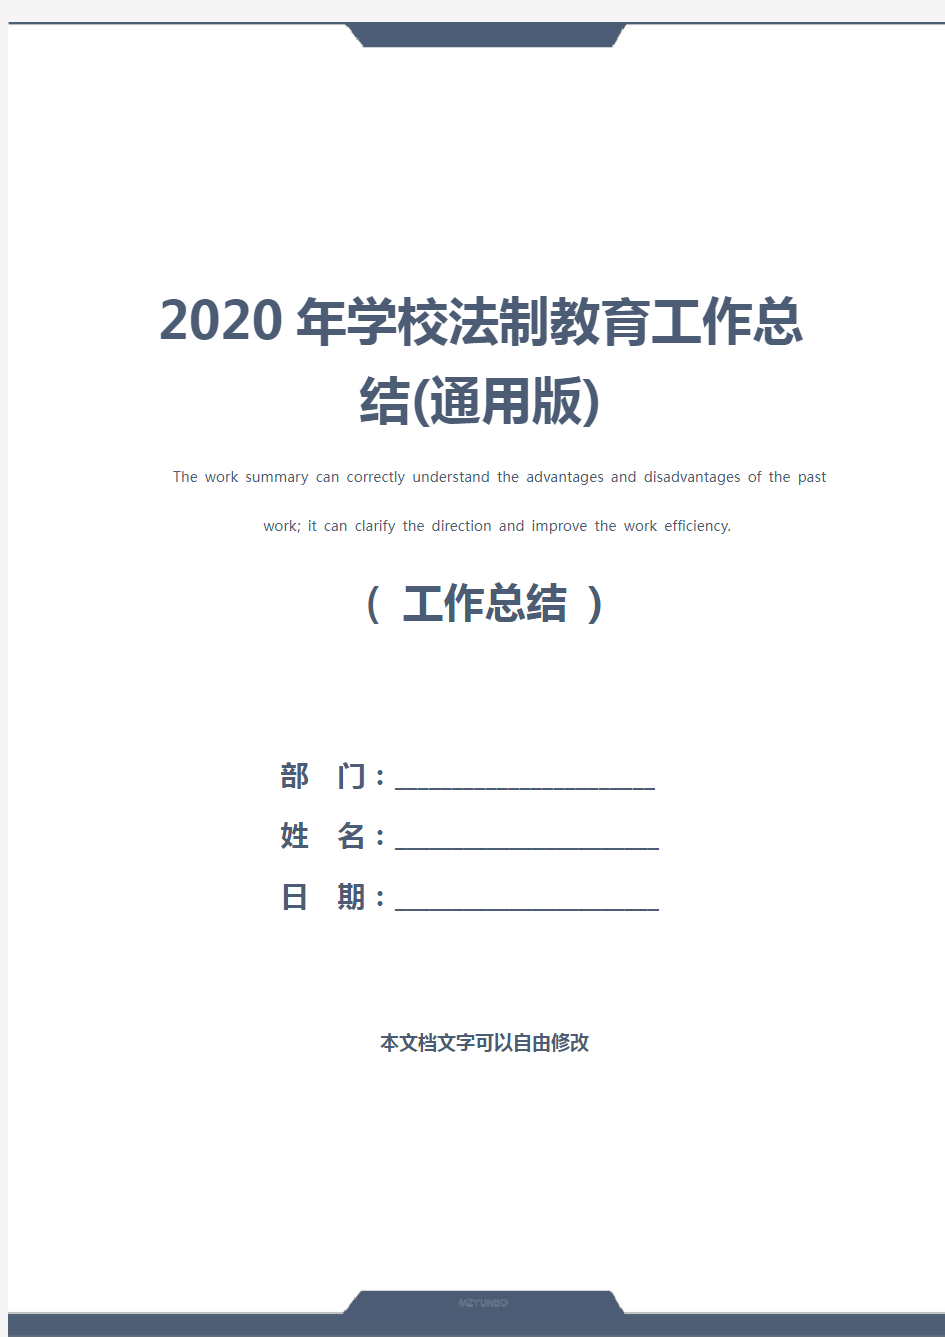 2020年学校法制教育工作总结(通用版)